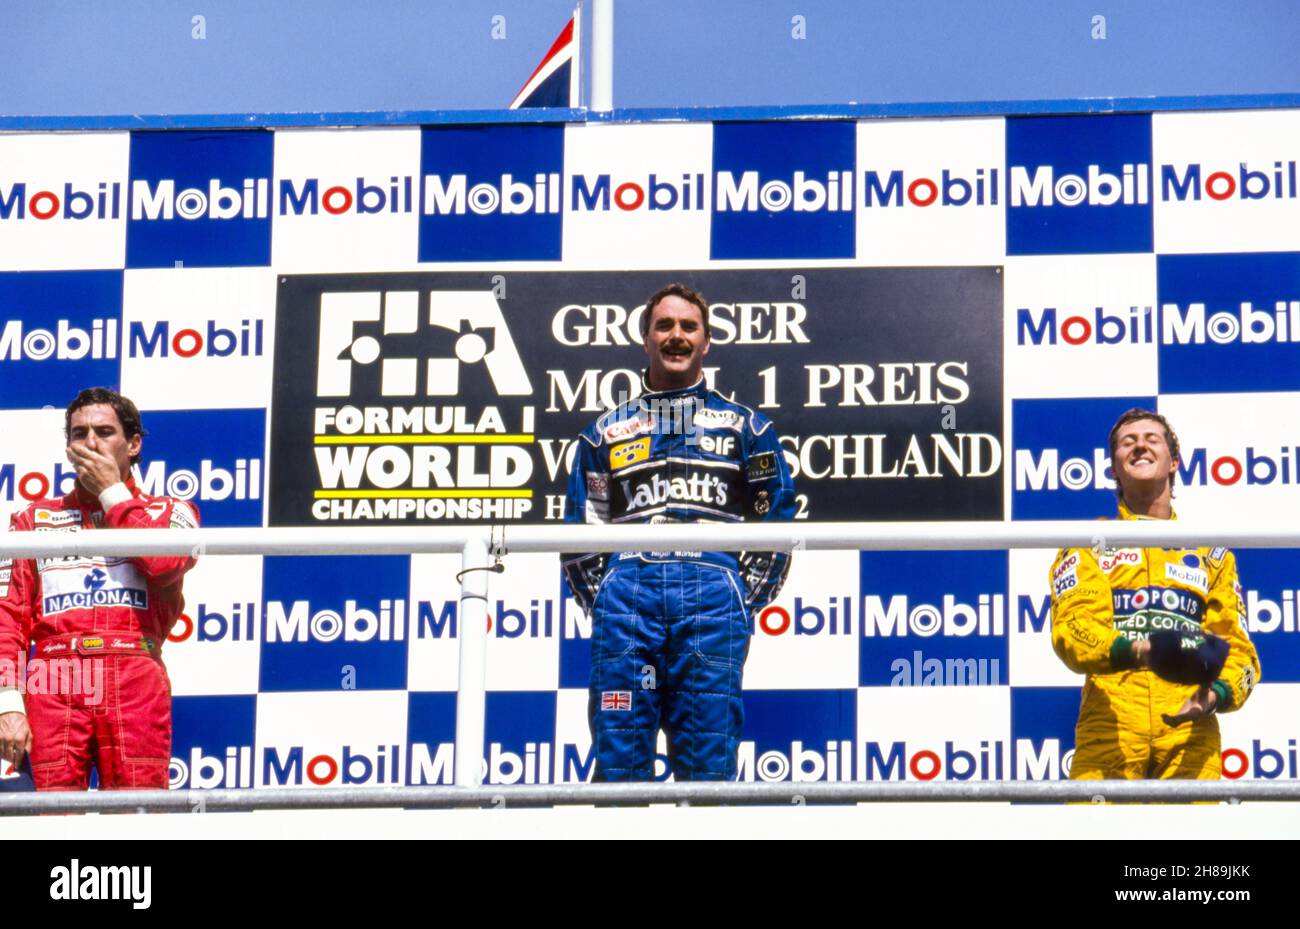 01 Senna Ayrton (bra), Honda Marlboro McLaren, McLaren-Honda MP4/7A, 05 Mansell Nigel (gbr), Canon Williams Team, Williams Renault FW14B, 19 Schumacher Michael (ger), Camel Benetton Ford, Benetton-Ford B192 sul podio durante il Gran Premio di Germania 1992 sull'Hockenheimring, 10° round del Campionato FIA di Formula 1 1992 dal 24 al 26 luglio 1992 a Hockenheim, Germania - Foto: DPPI F1/DPPI/LiveMedia Foto Stock